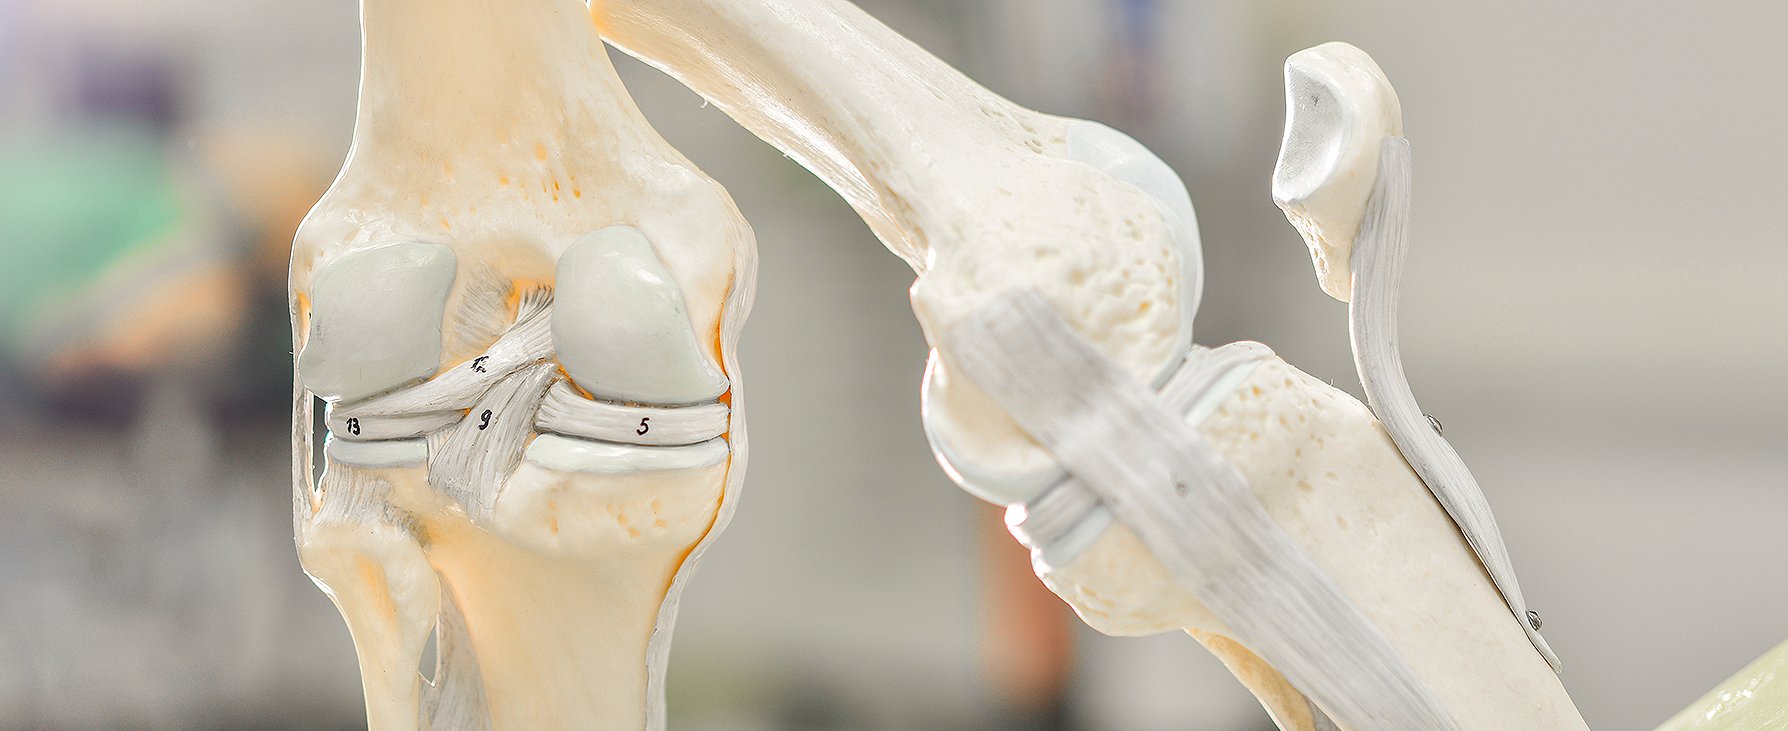 Zwei anatomische Modelle der Knochen des Knies